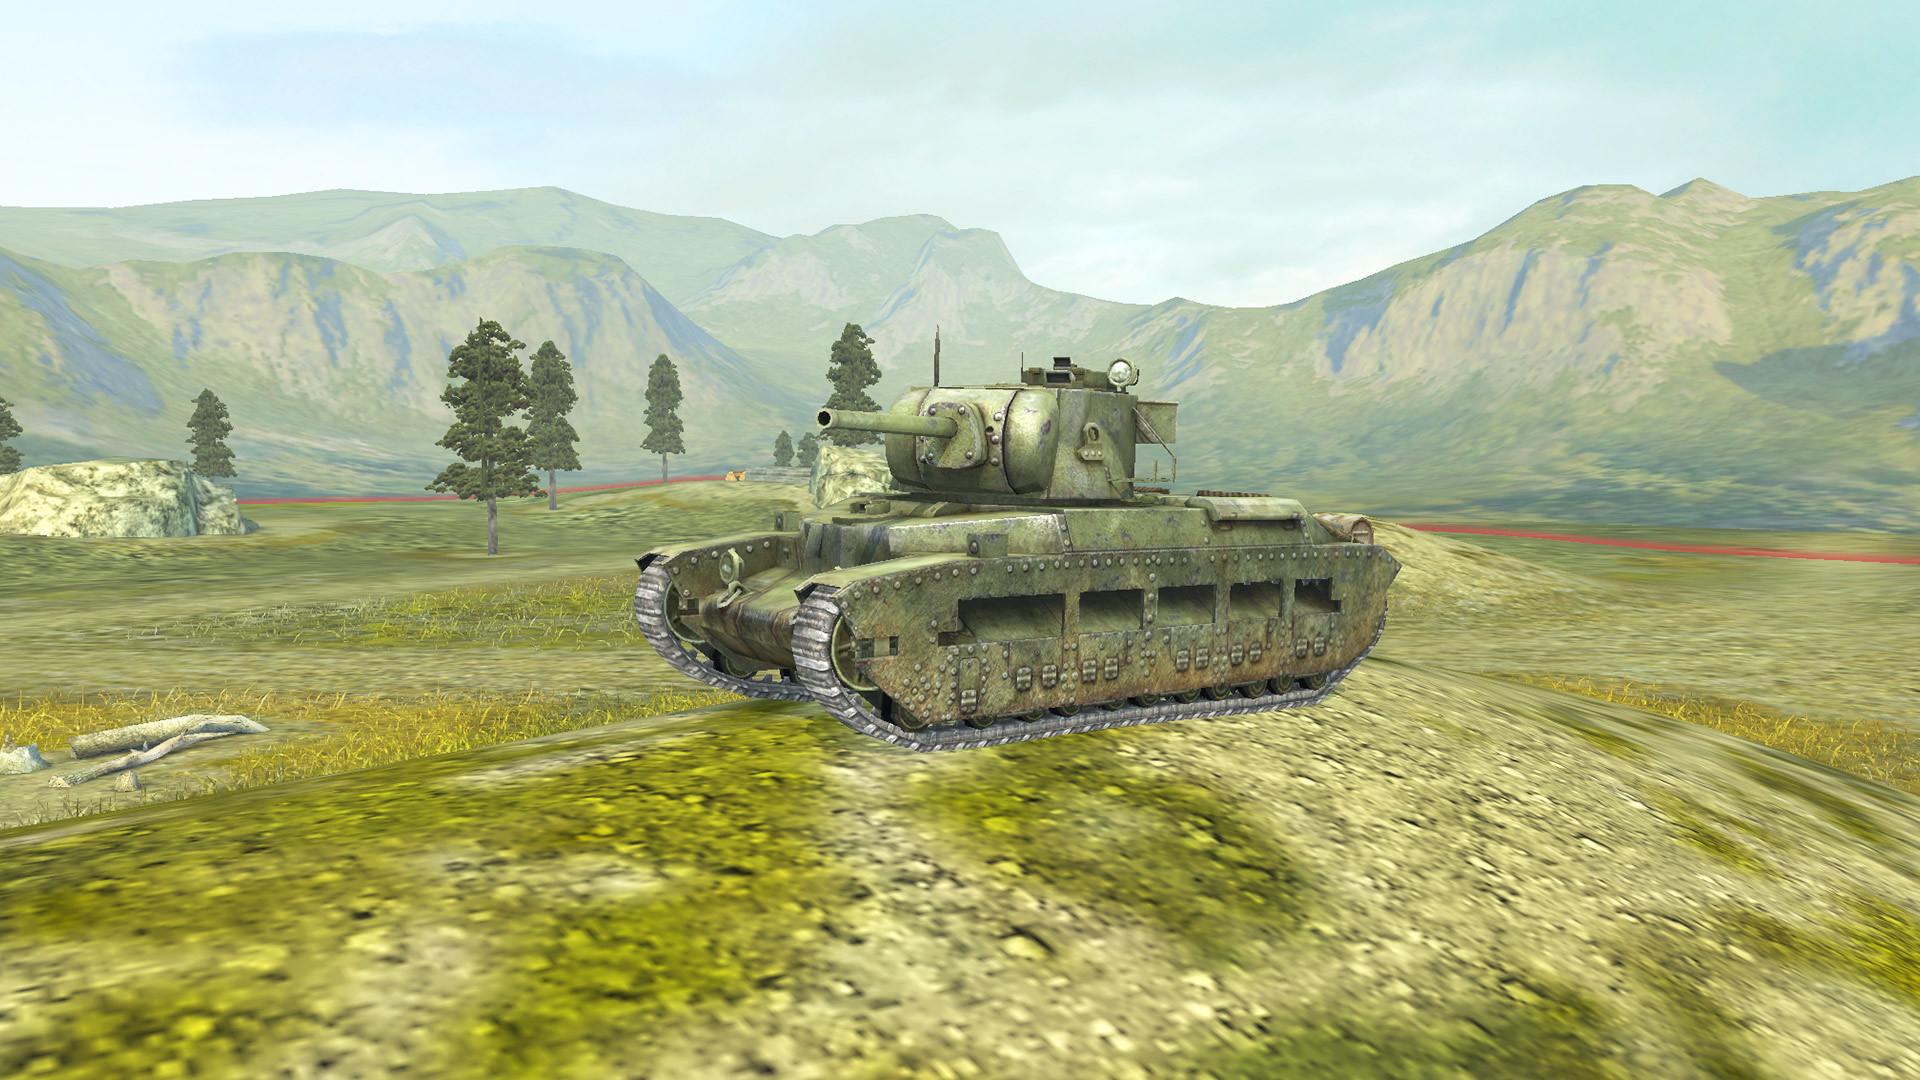 World of Tanks Blitz - The Plush Matilda